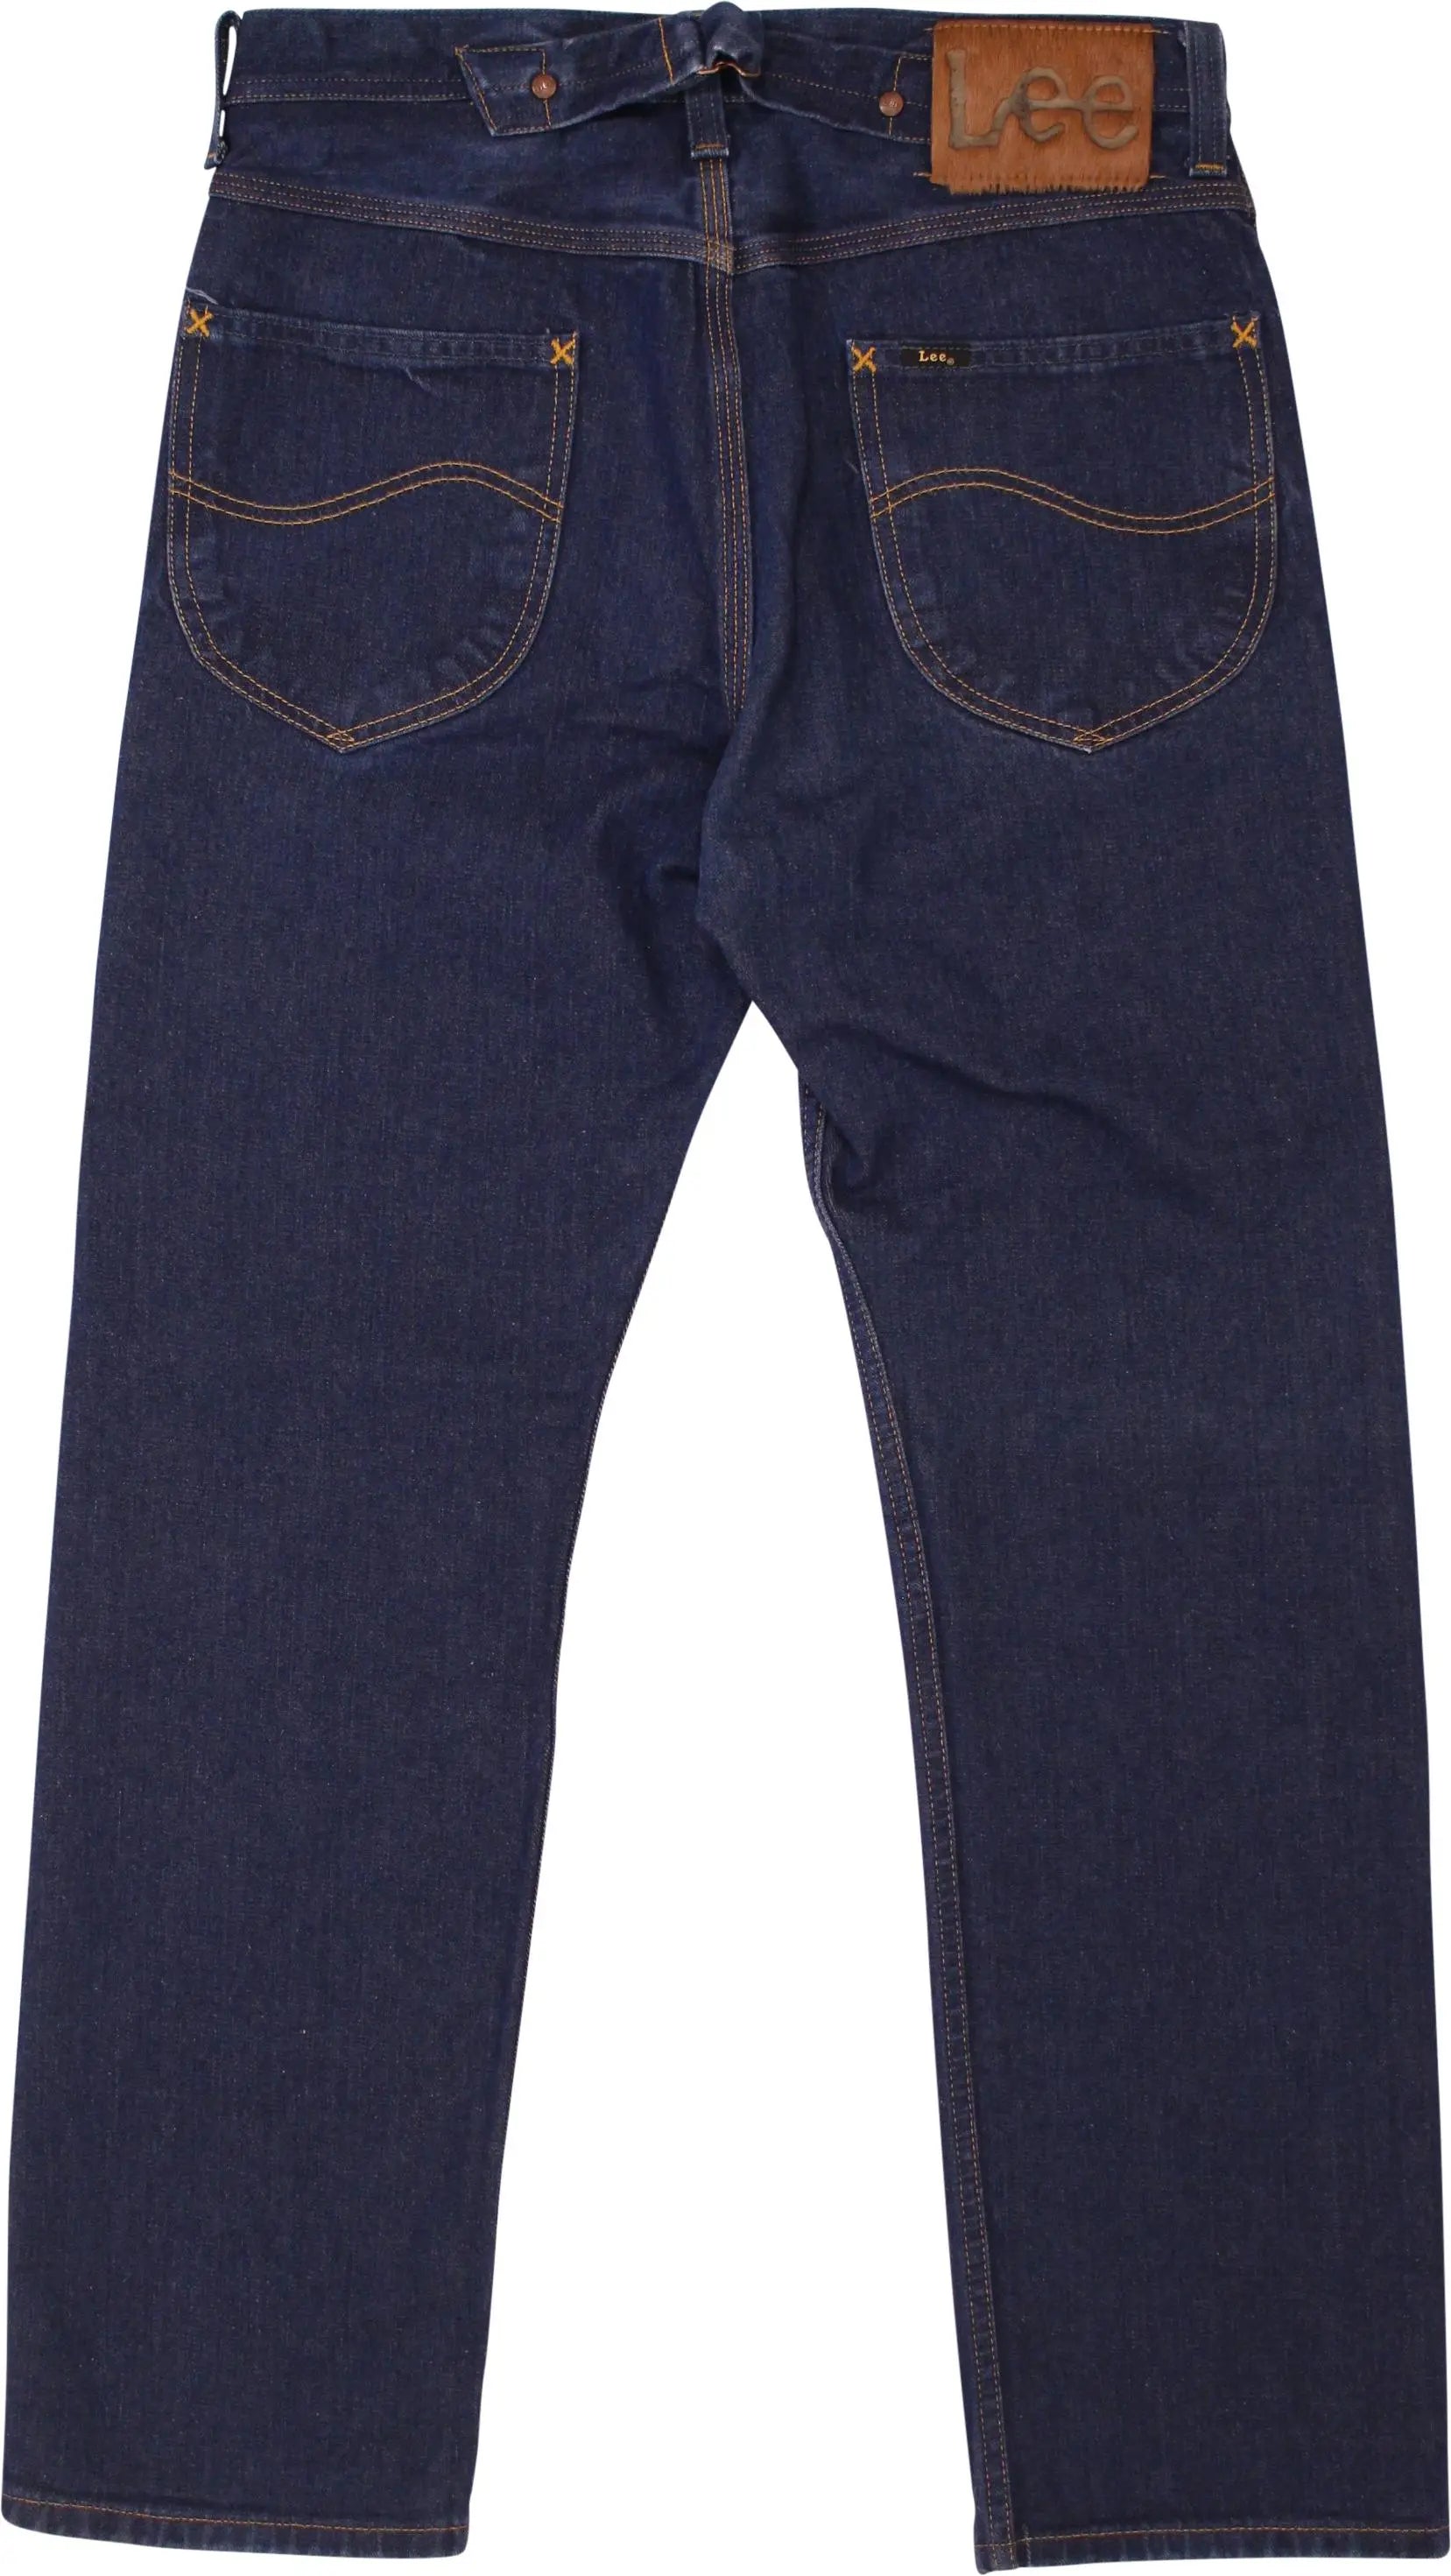 Lee - Lee Gold Label Regular Jeans- ThriftTale.com - Vintage and second handclothing